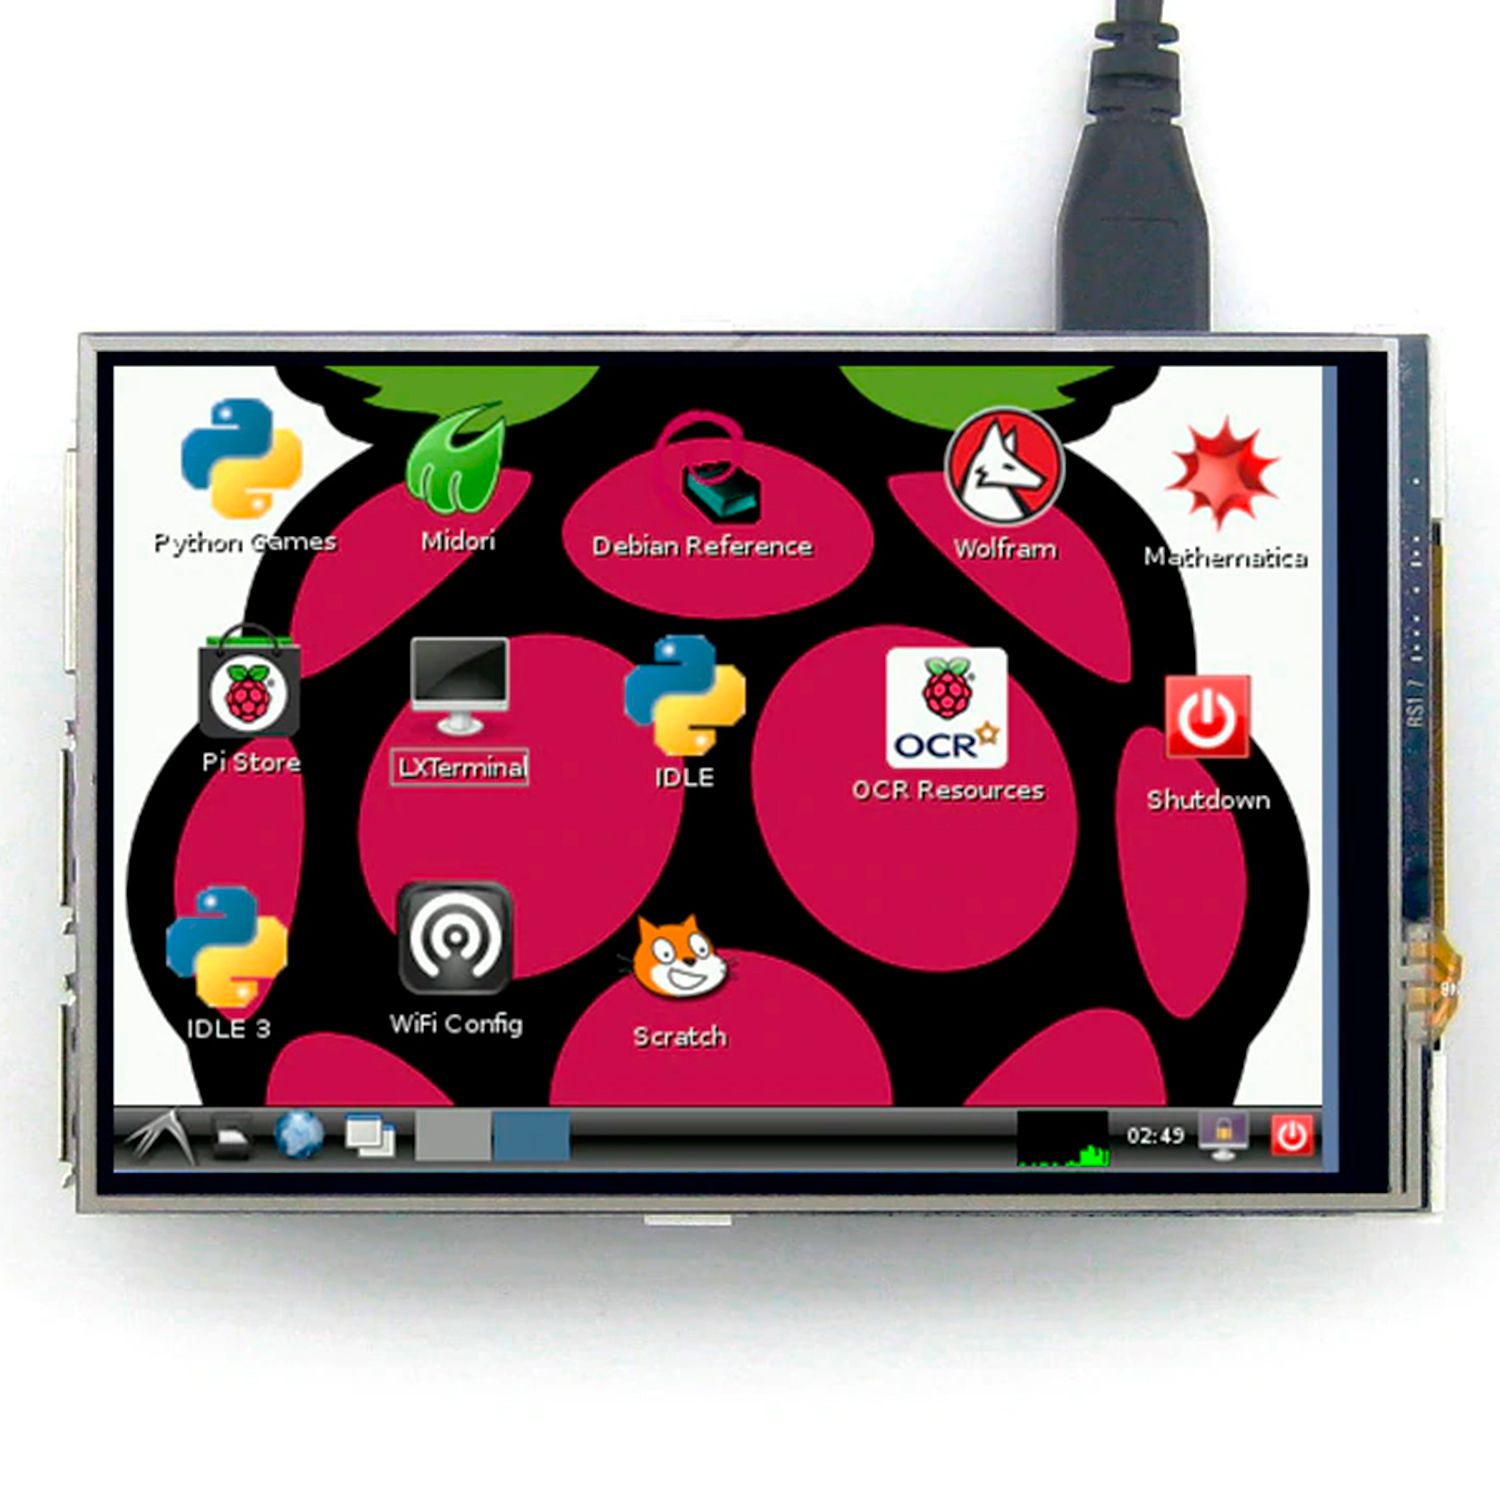 Сенсорный экран Waveshare 4-дюймовый TFT с SPI интерфейс для всех Raspberry Pi